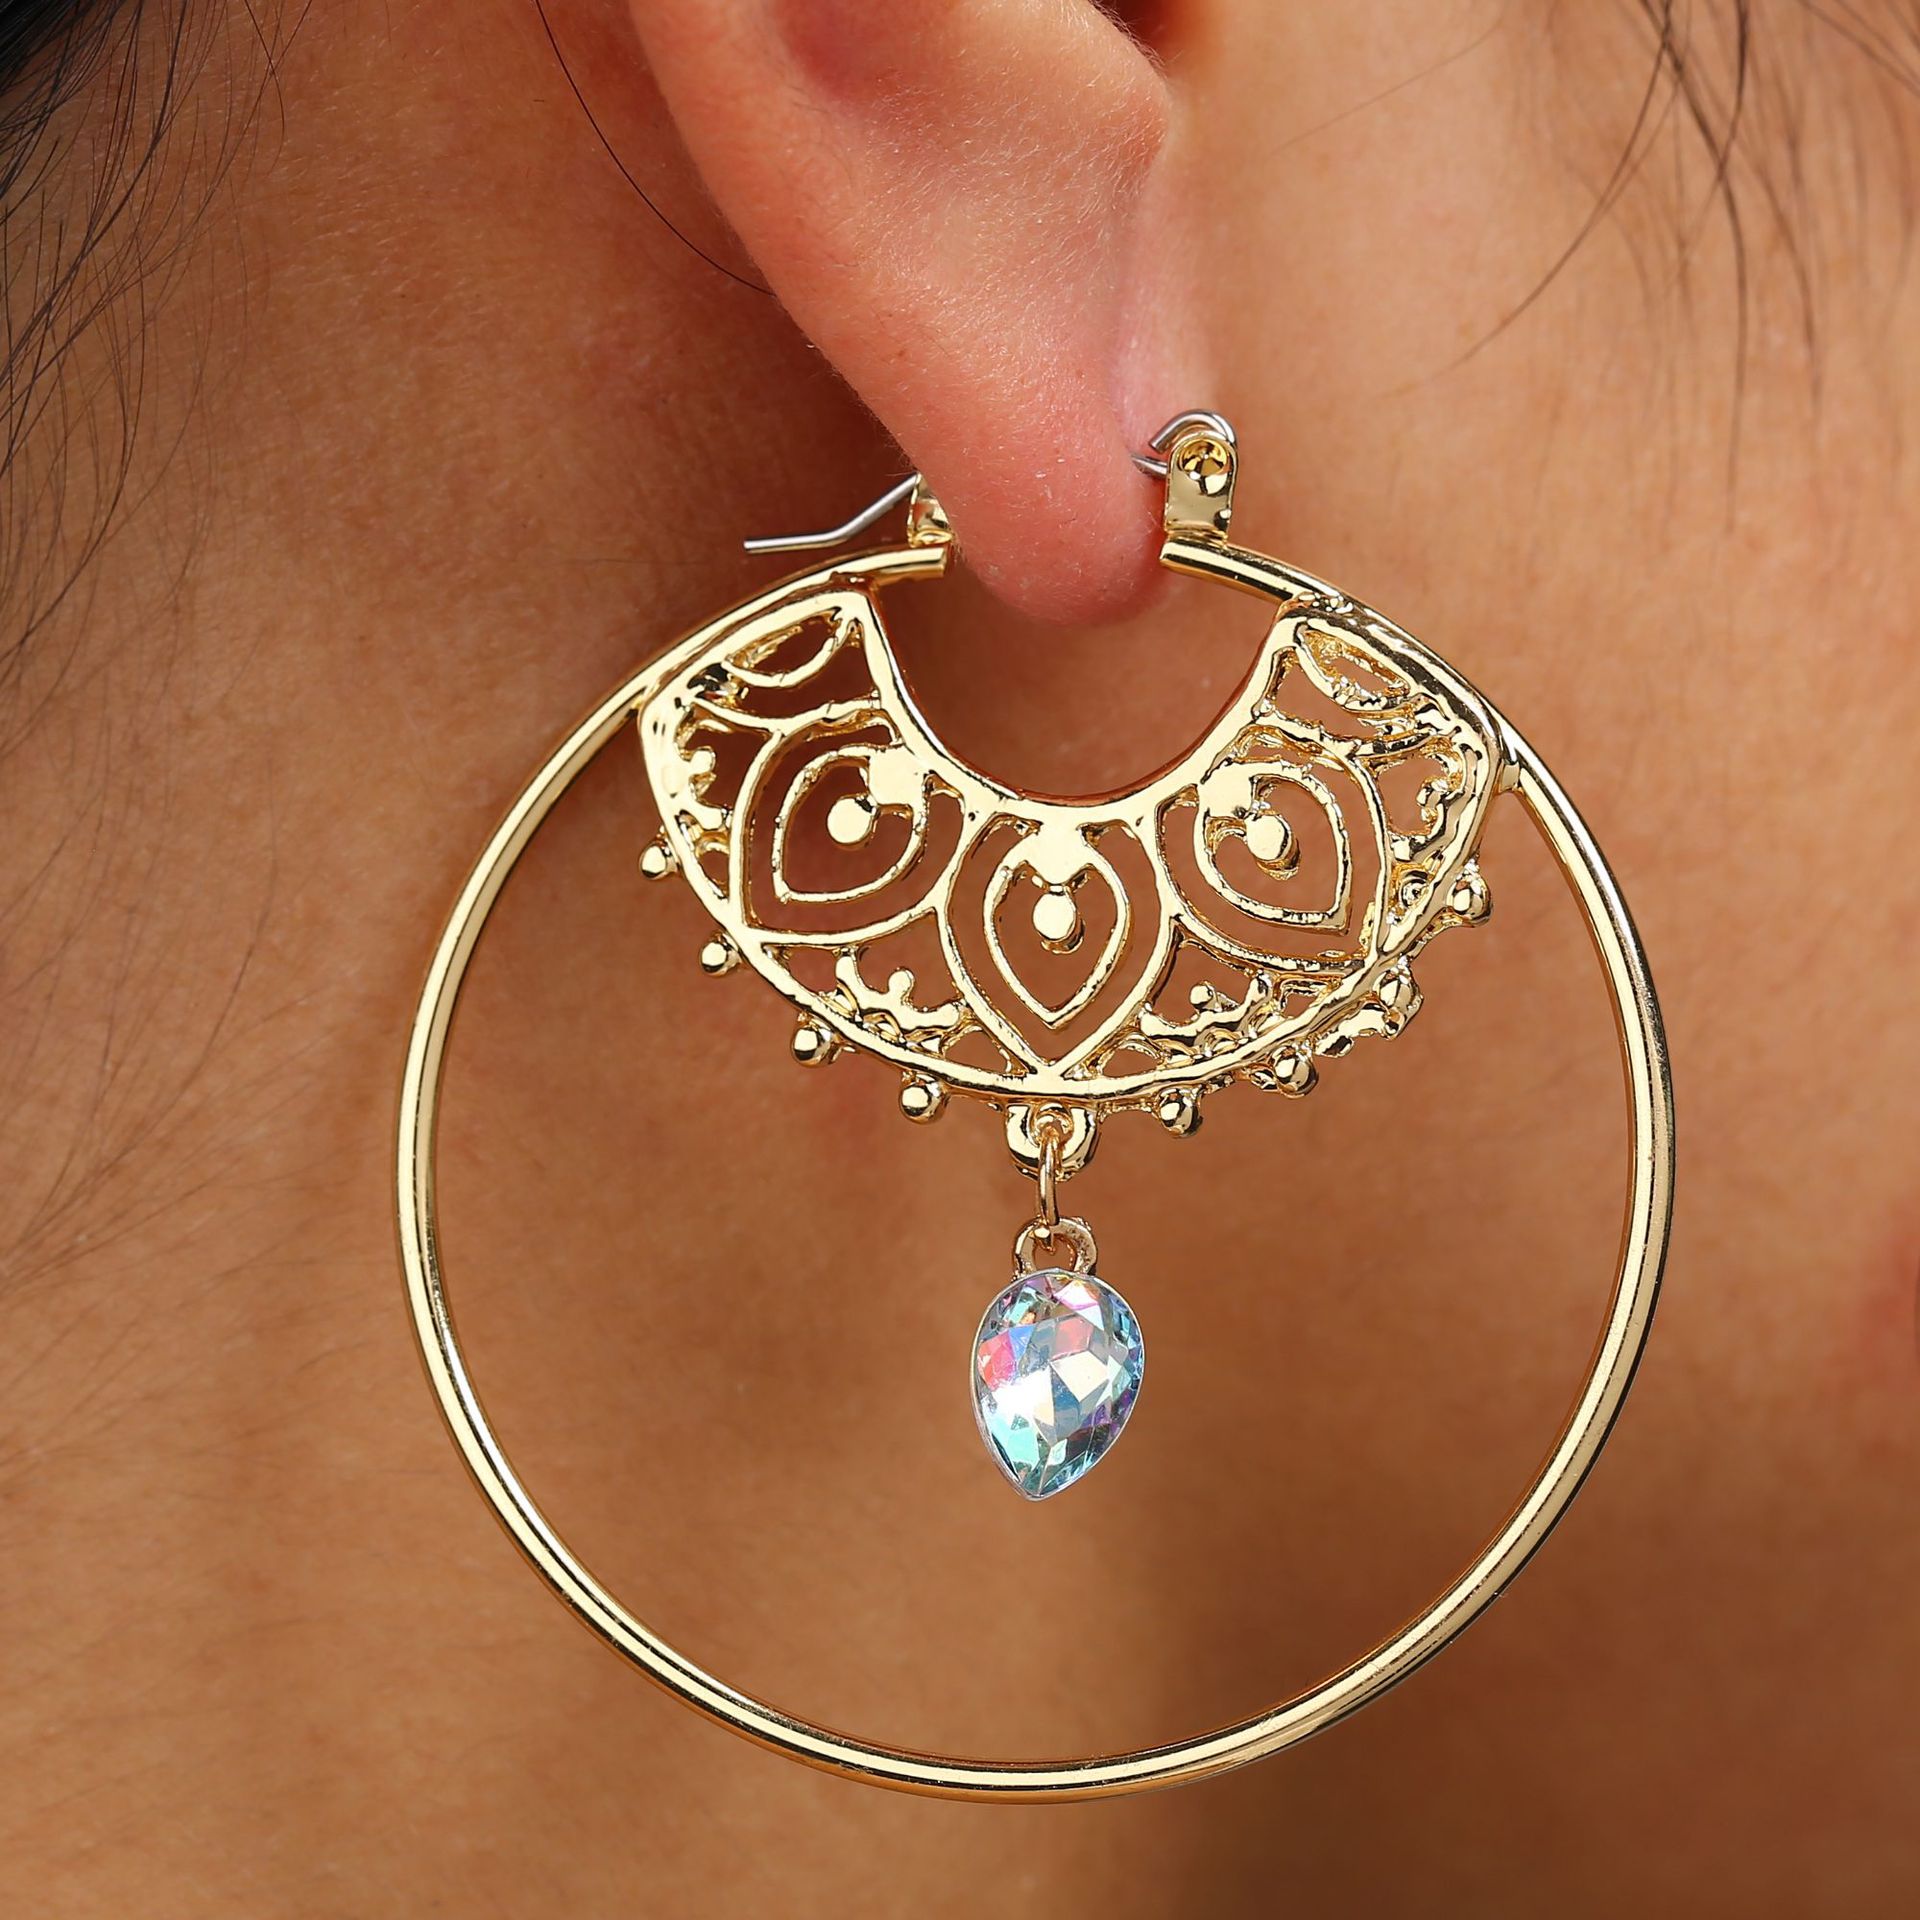 Vintage trendy guld farve bøjle øreringe til kvinder boheme krystal statement geometri runde kreol øreringe pierce smykker